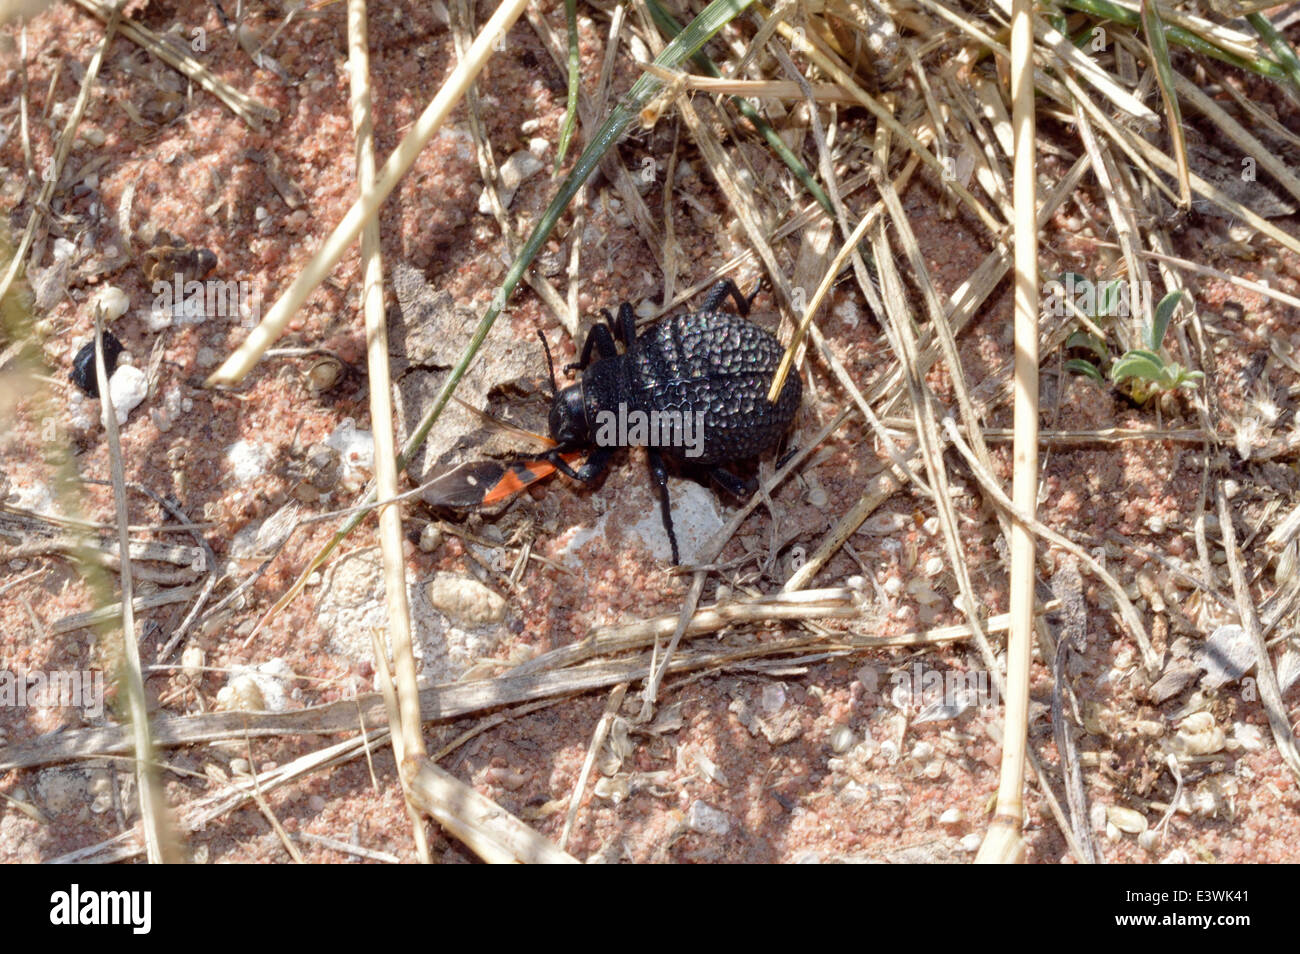 Darkling alimentation du dendroctone sur un terrain bug (Spilostethus pandurus) Namibie Banque D'Images